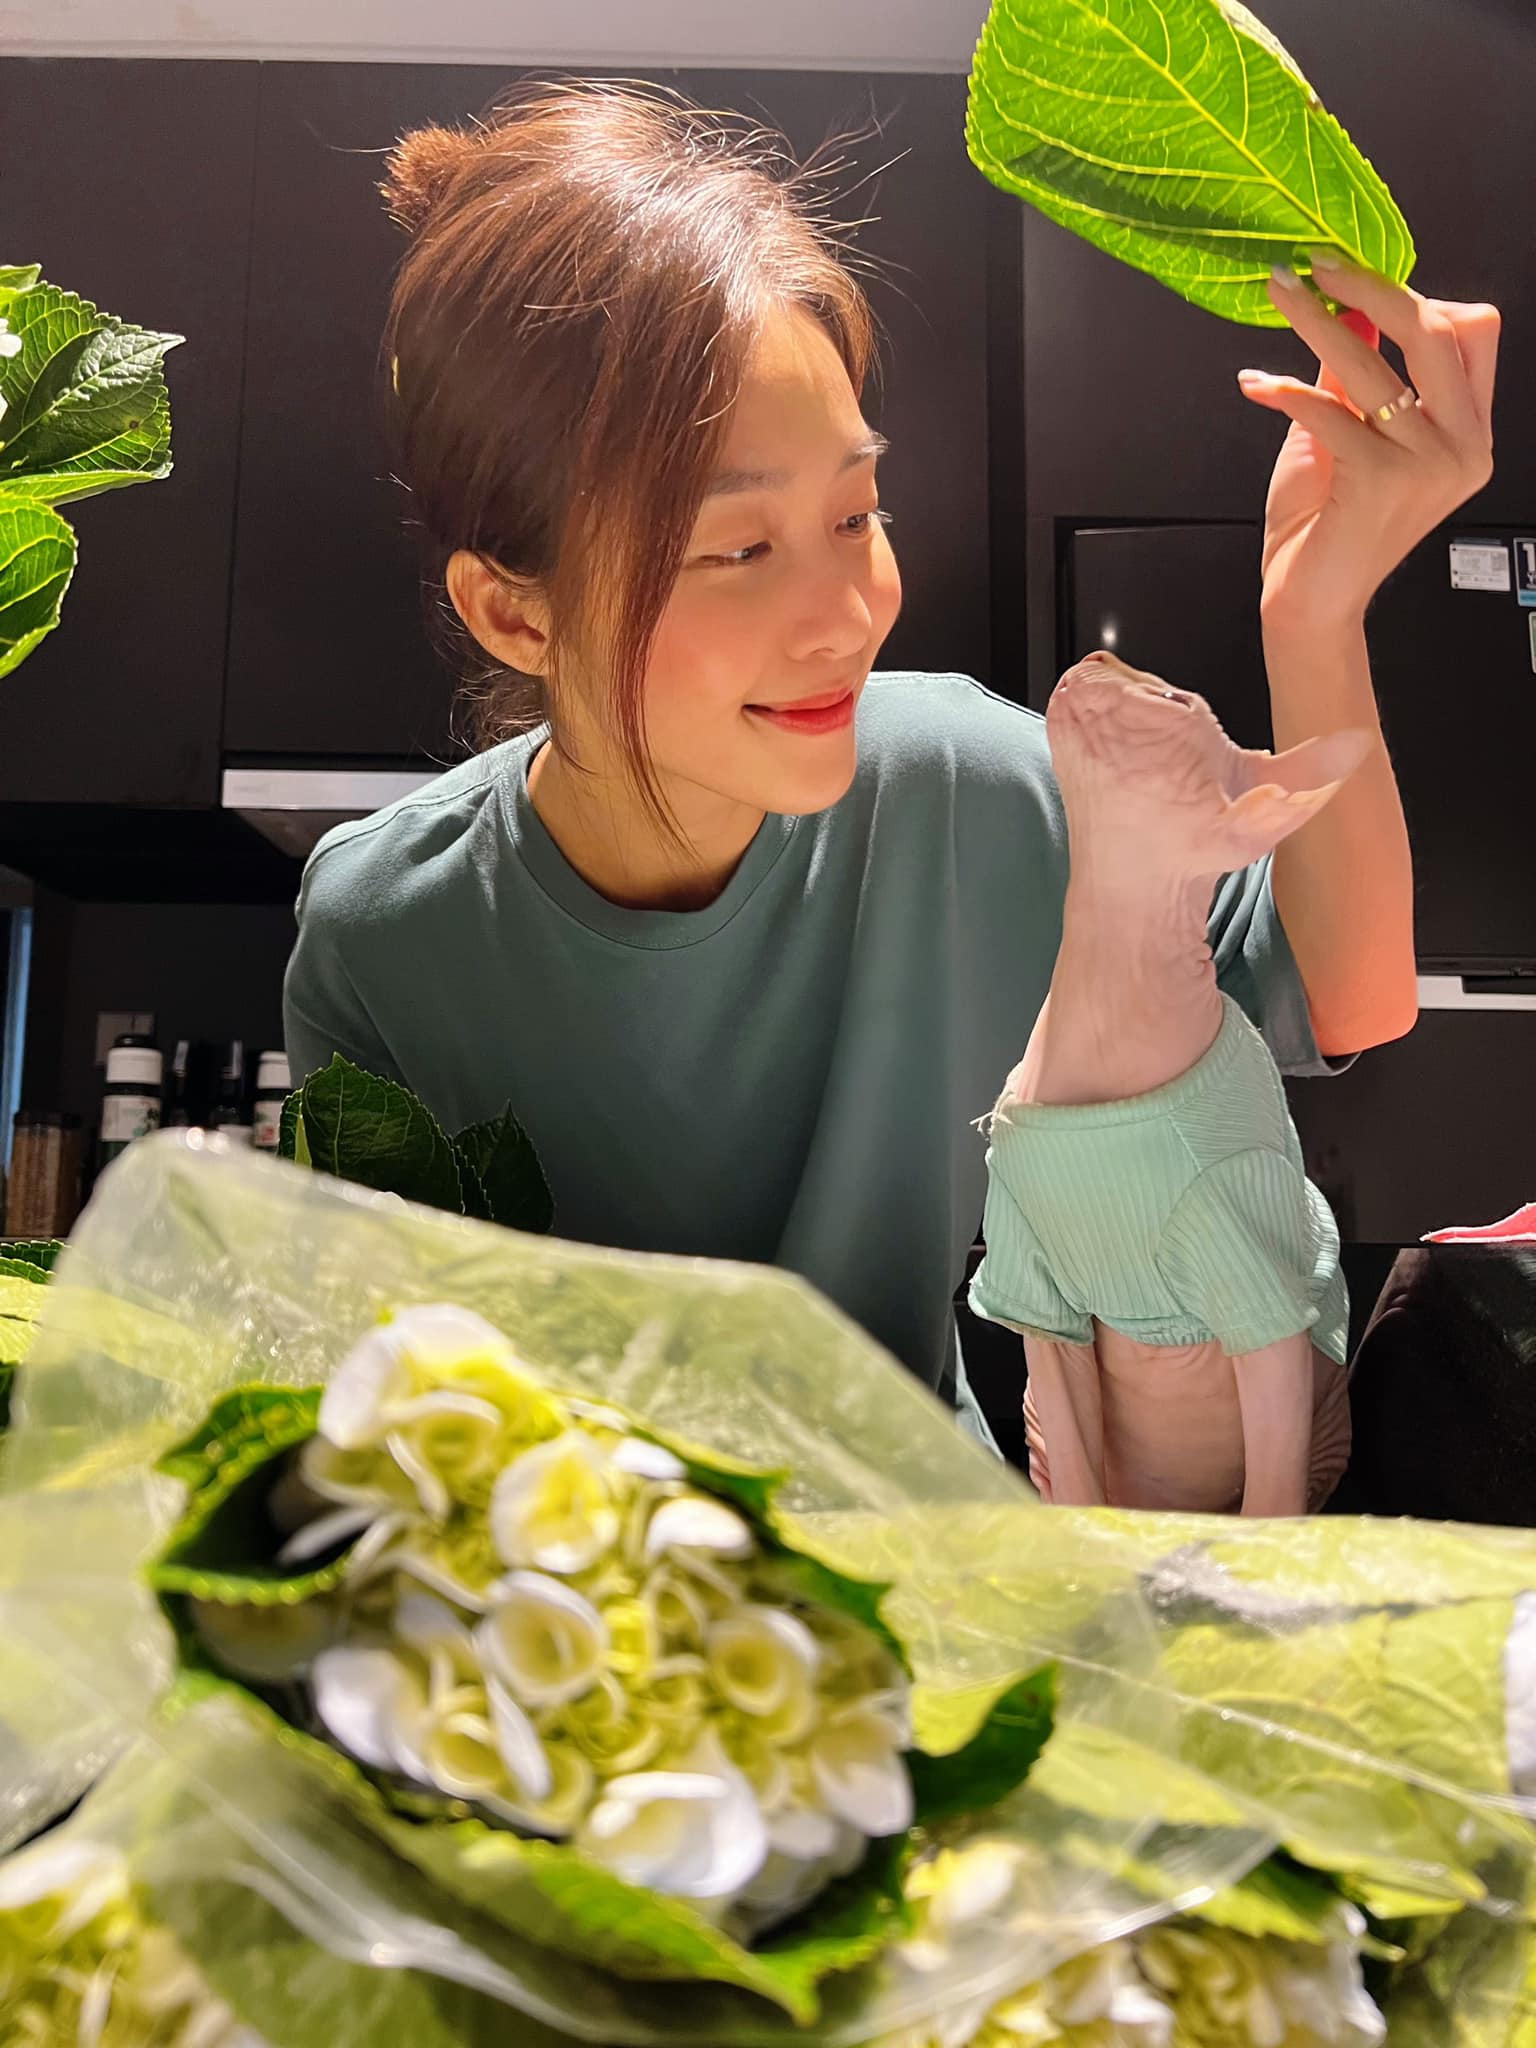 Khả Ngân cắm hoa bên mèo cưng. Nữ diễn viên hiện đang ở Hà Nội để hoàn thành bộ phim '11 tháng 5 ngày'. Vai nữ chính Nhi của Khả Ngân nhận được nhiều lời khen của khán giả nhờ tính cách lém lỉnh, đáng yêu.